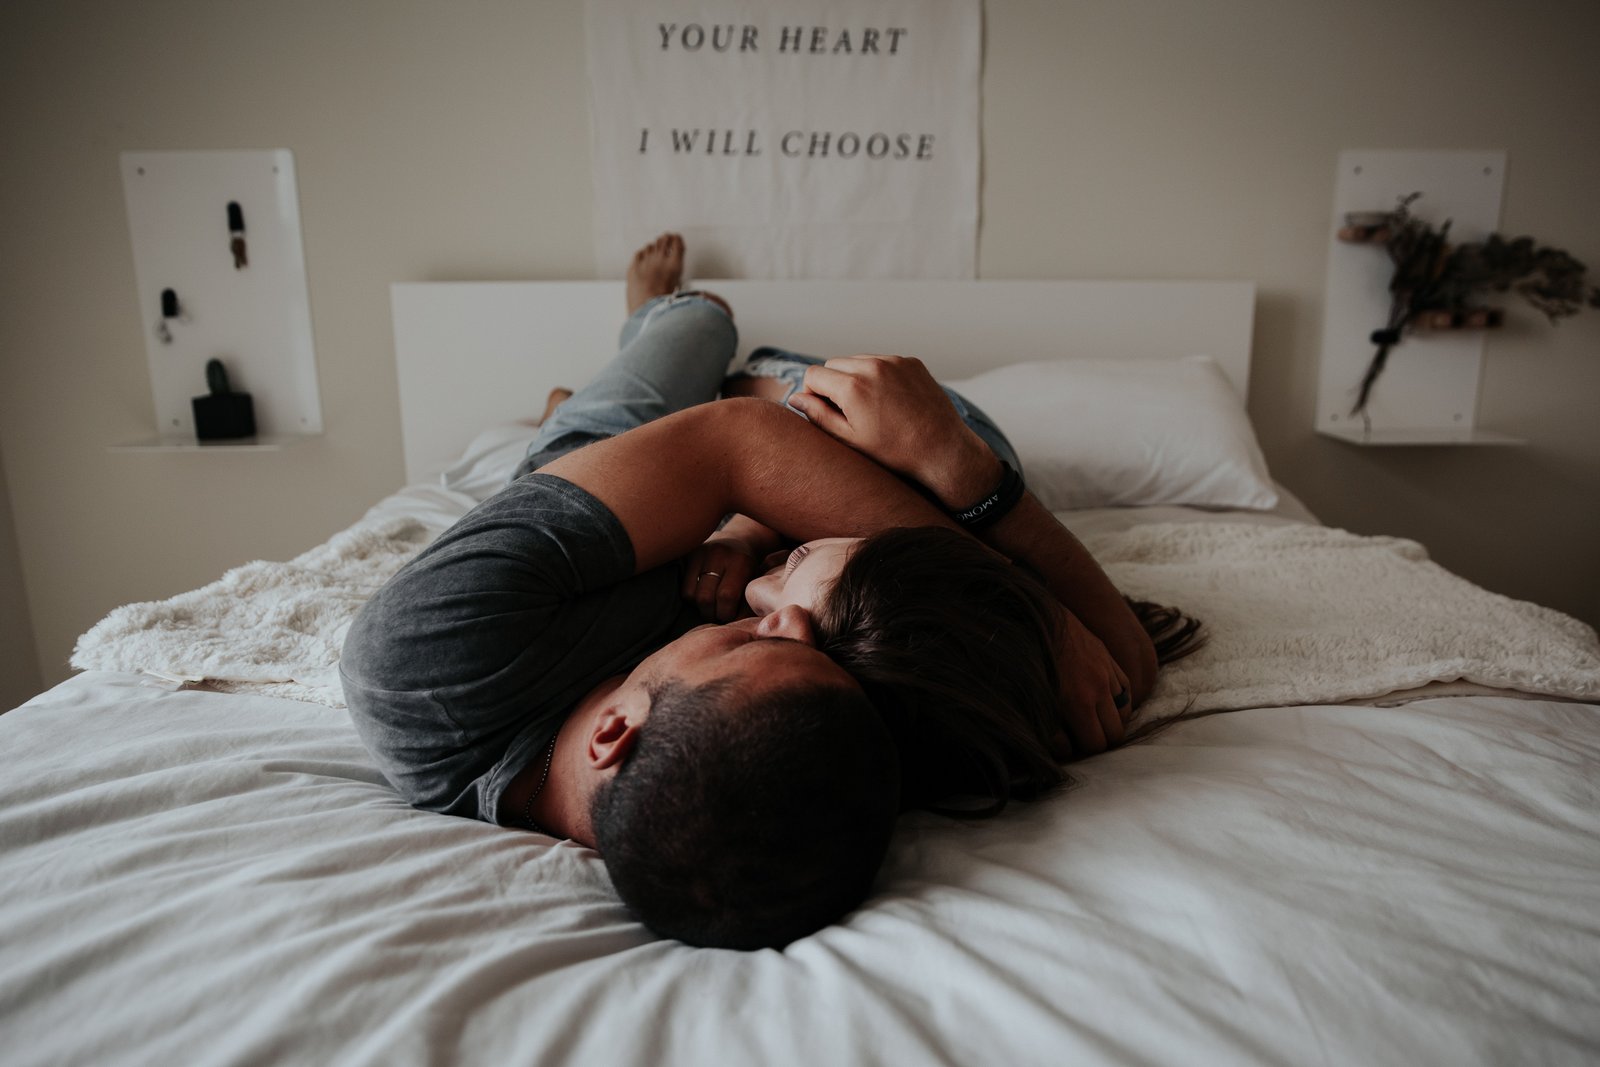 En mand uden erektil dysfunktion eller potensproblemer ligger i sengen ved siden af en kvinde, og begge krammer sammen.